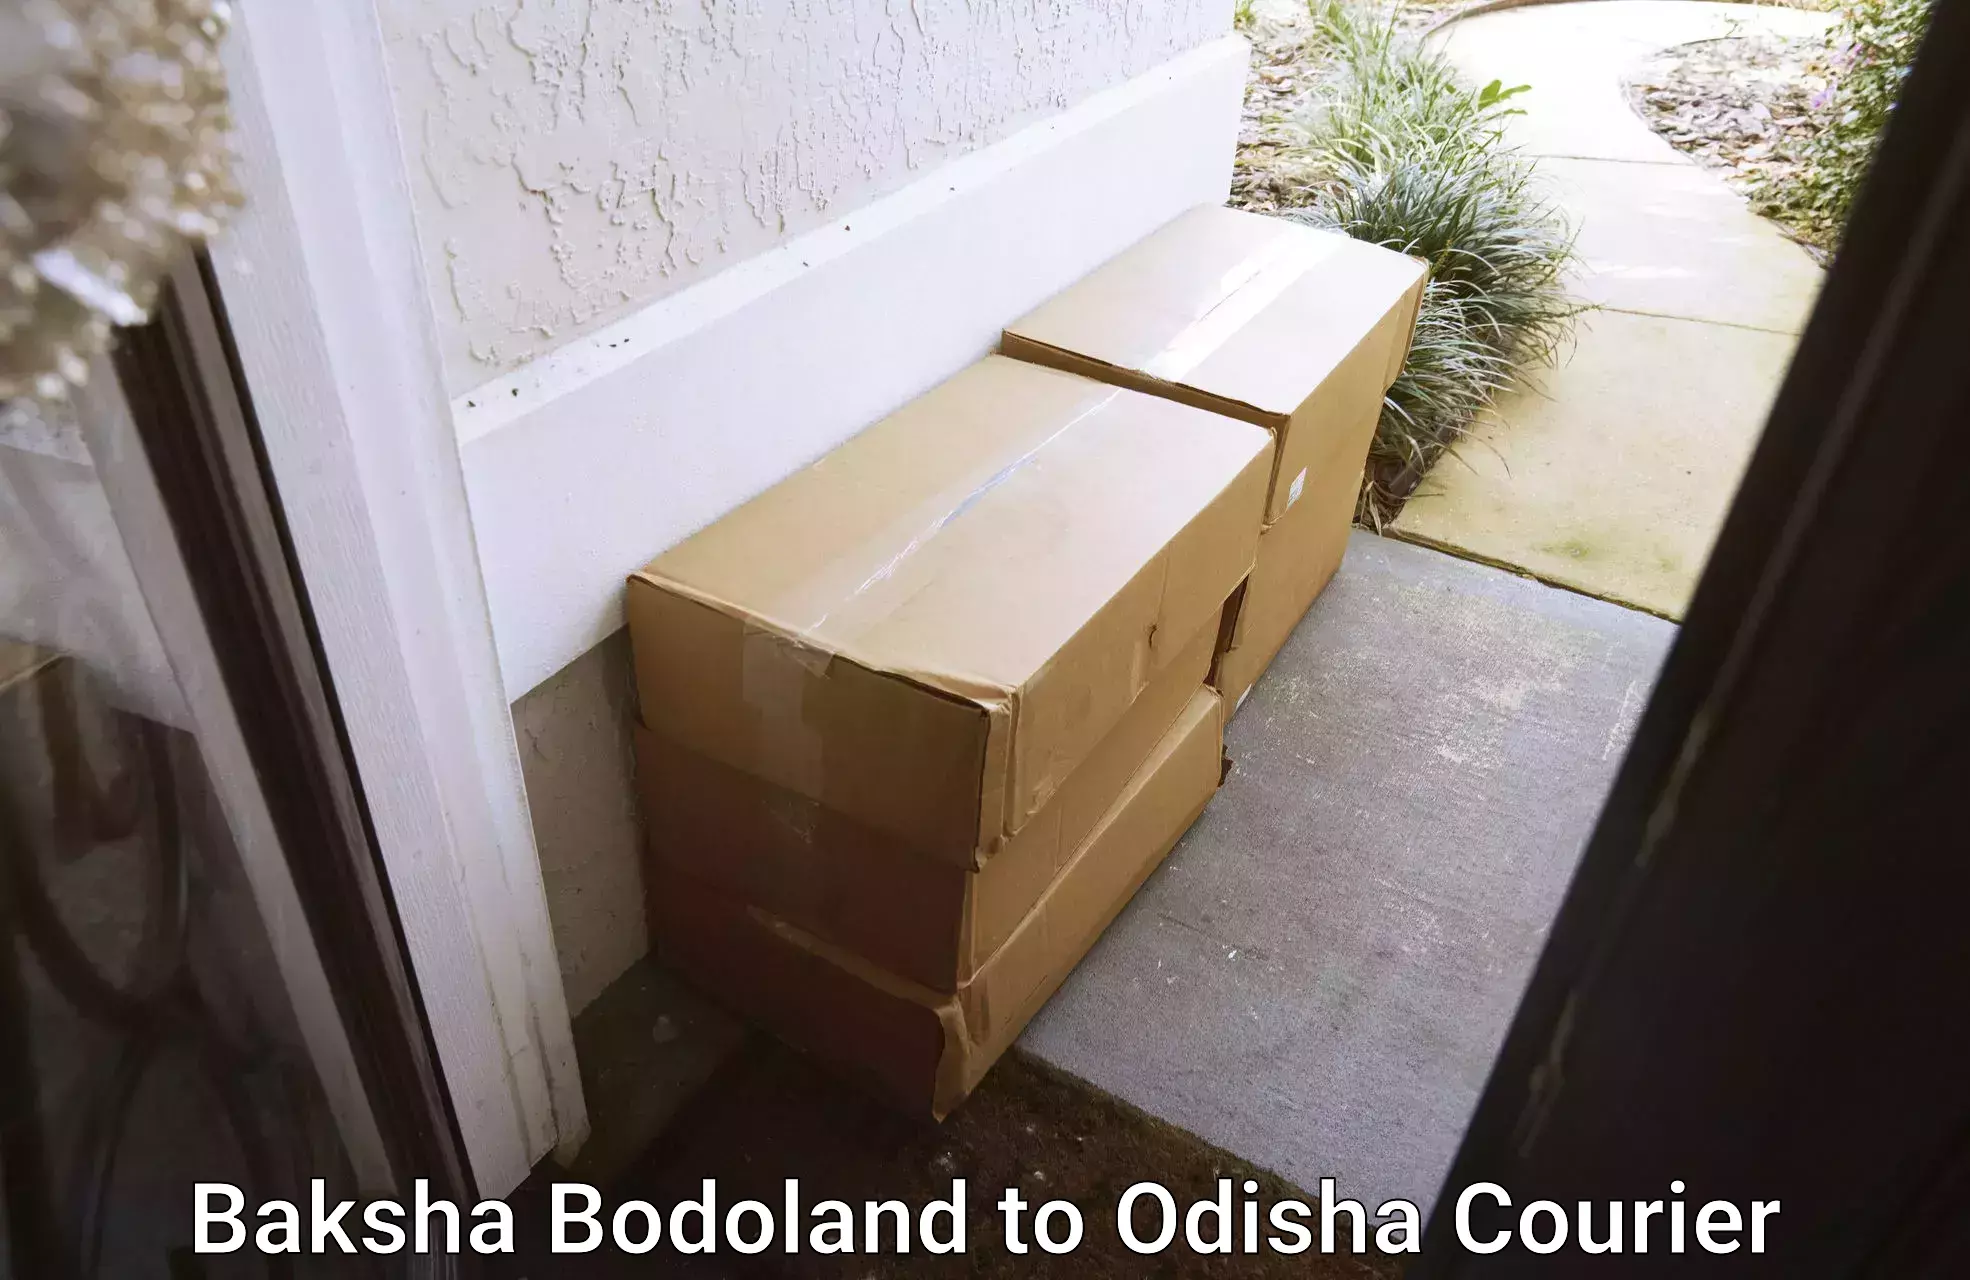 Courier service comparison Baksha Bodoland to Khordha